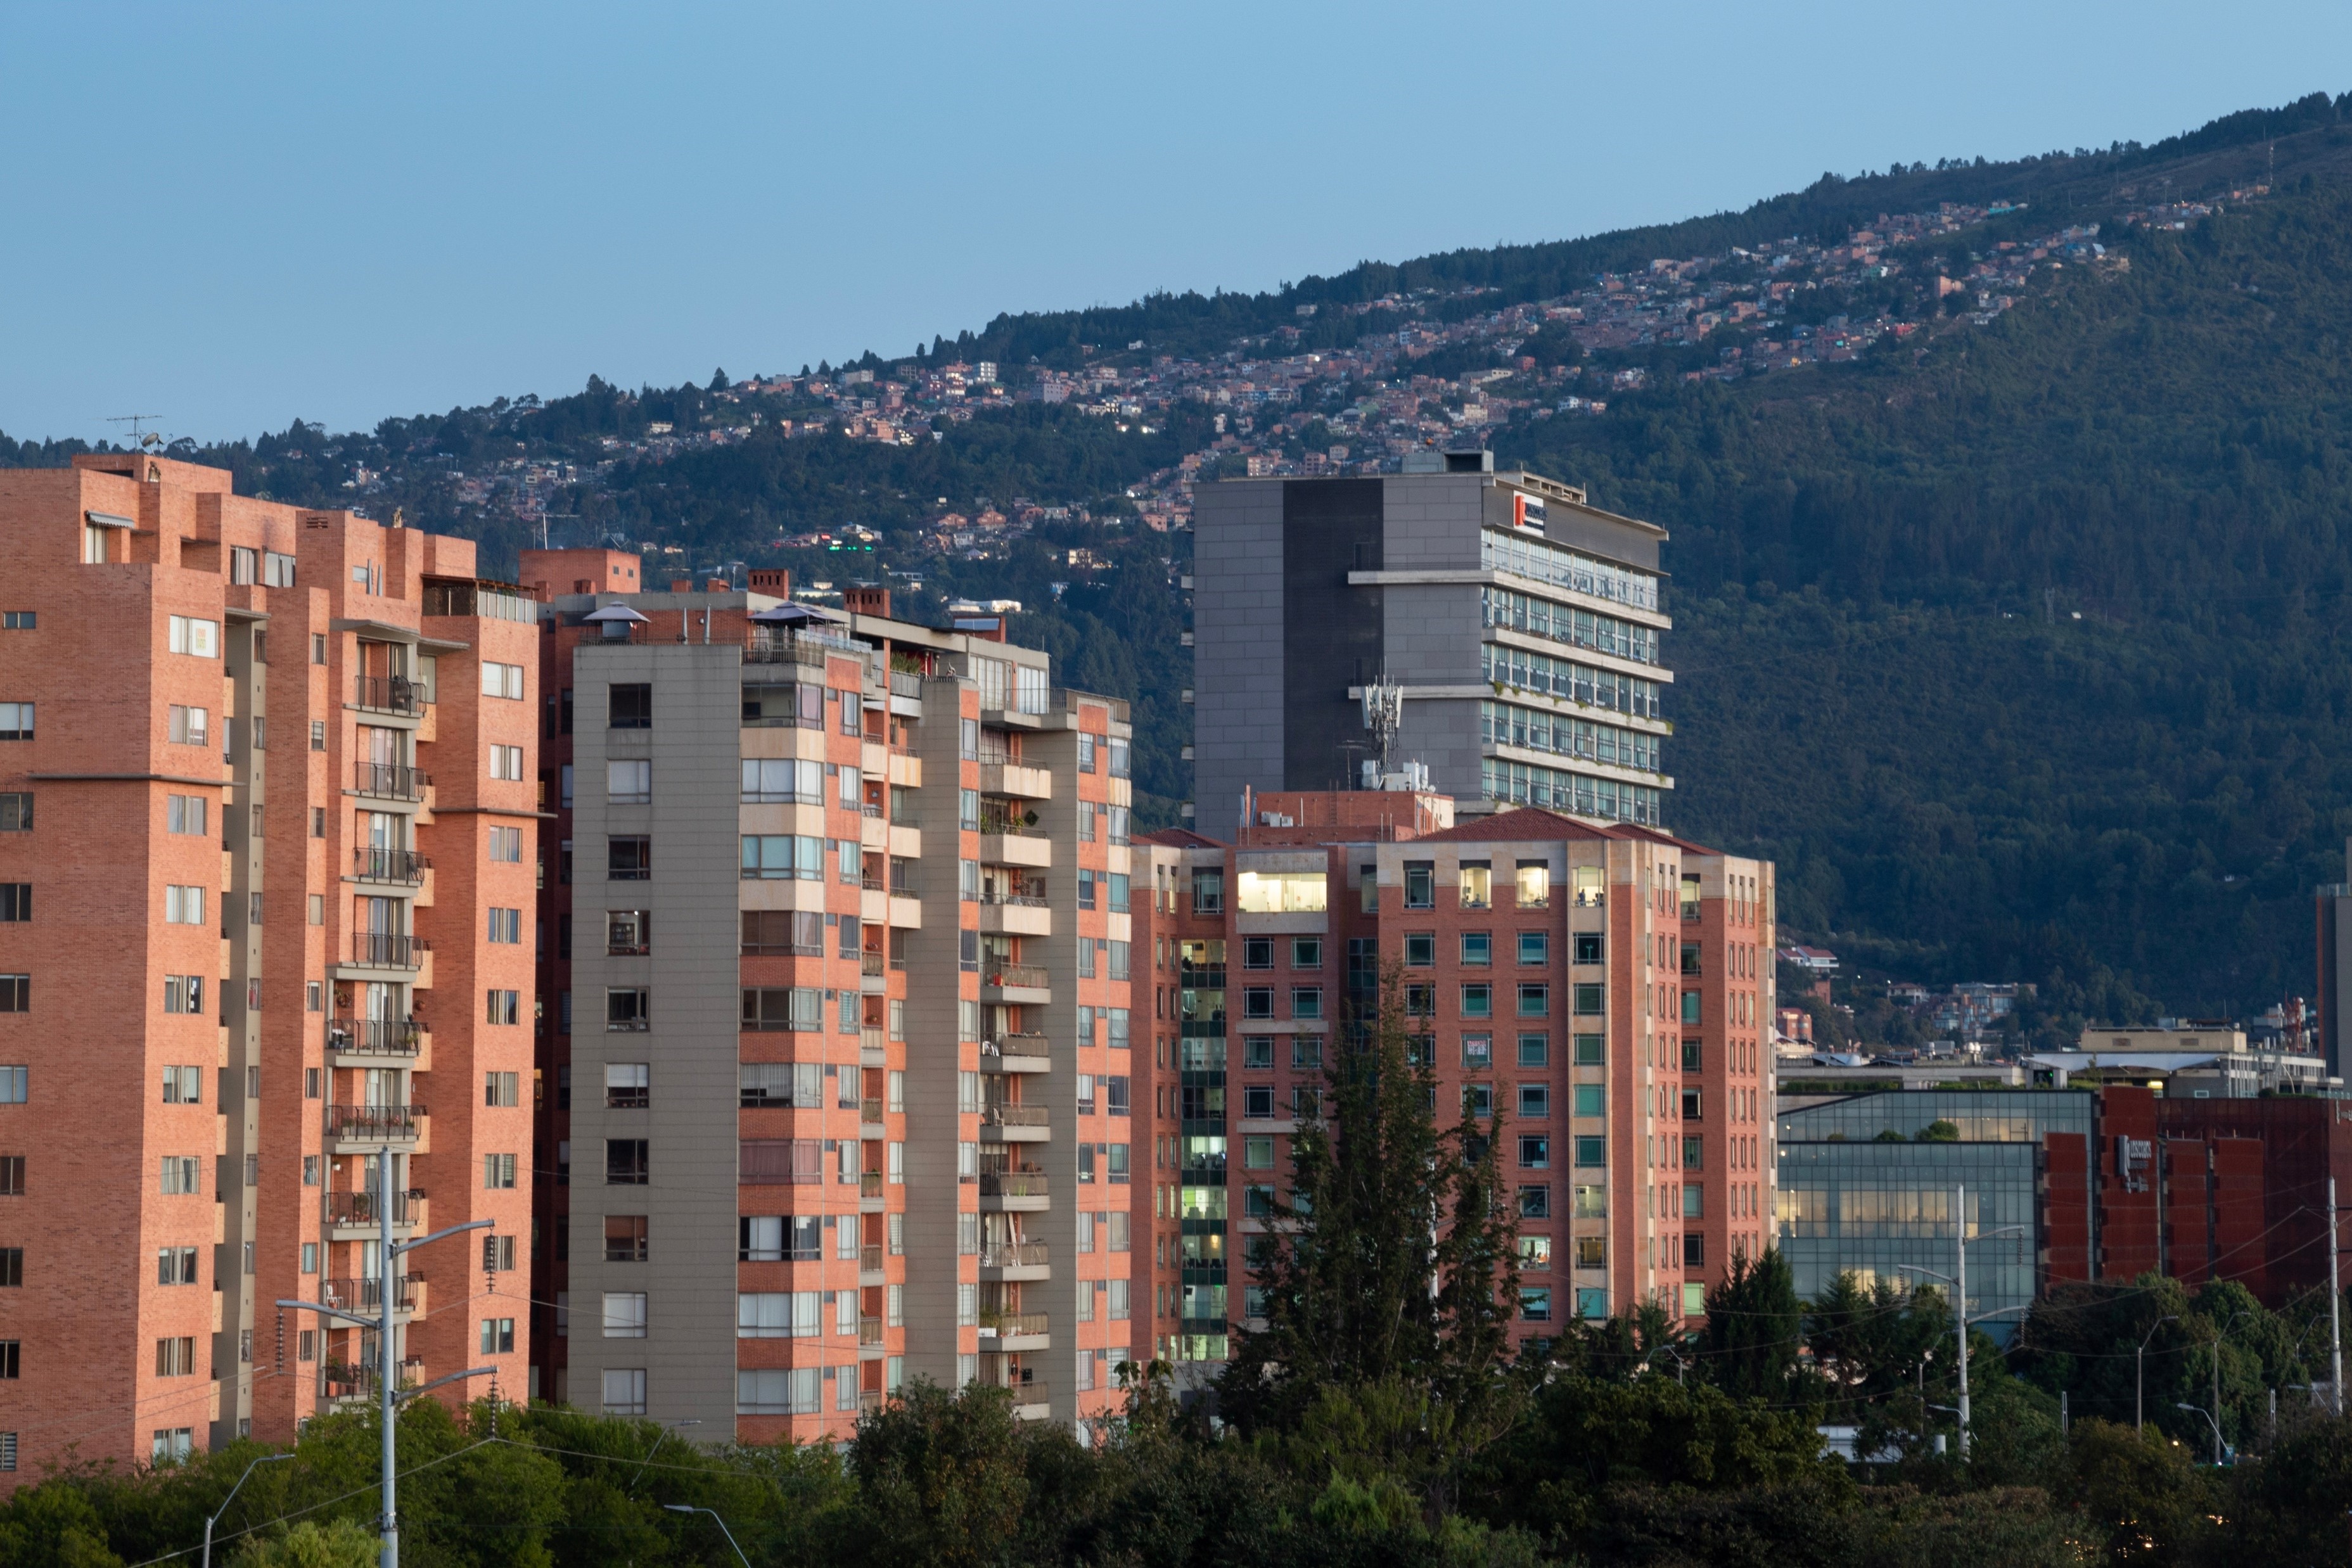 Cuánto vale un apartamento estrato 6 en Colombia y cómo es el negocio